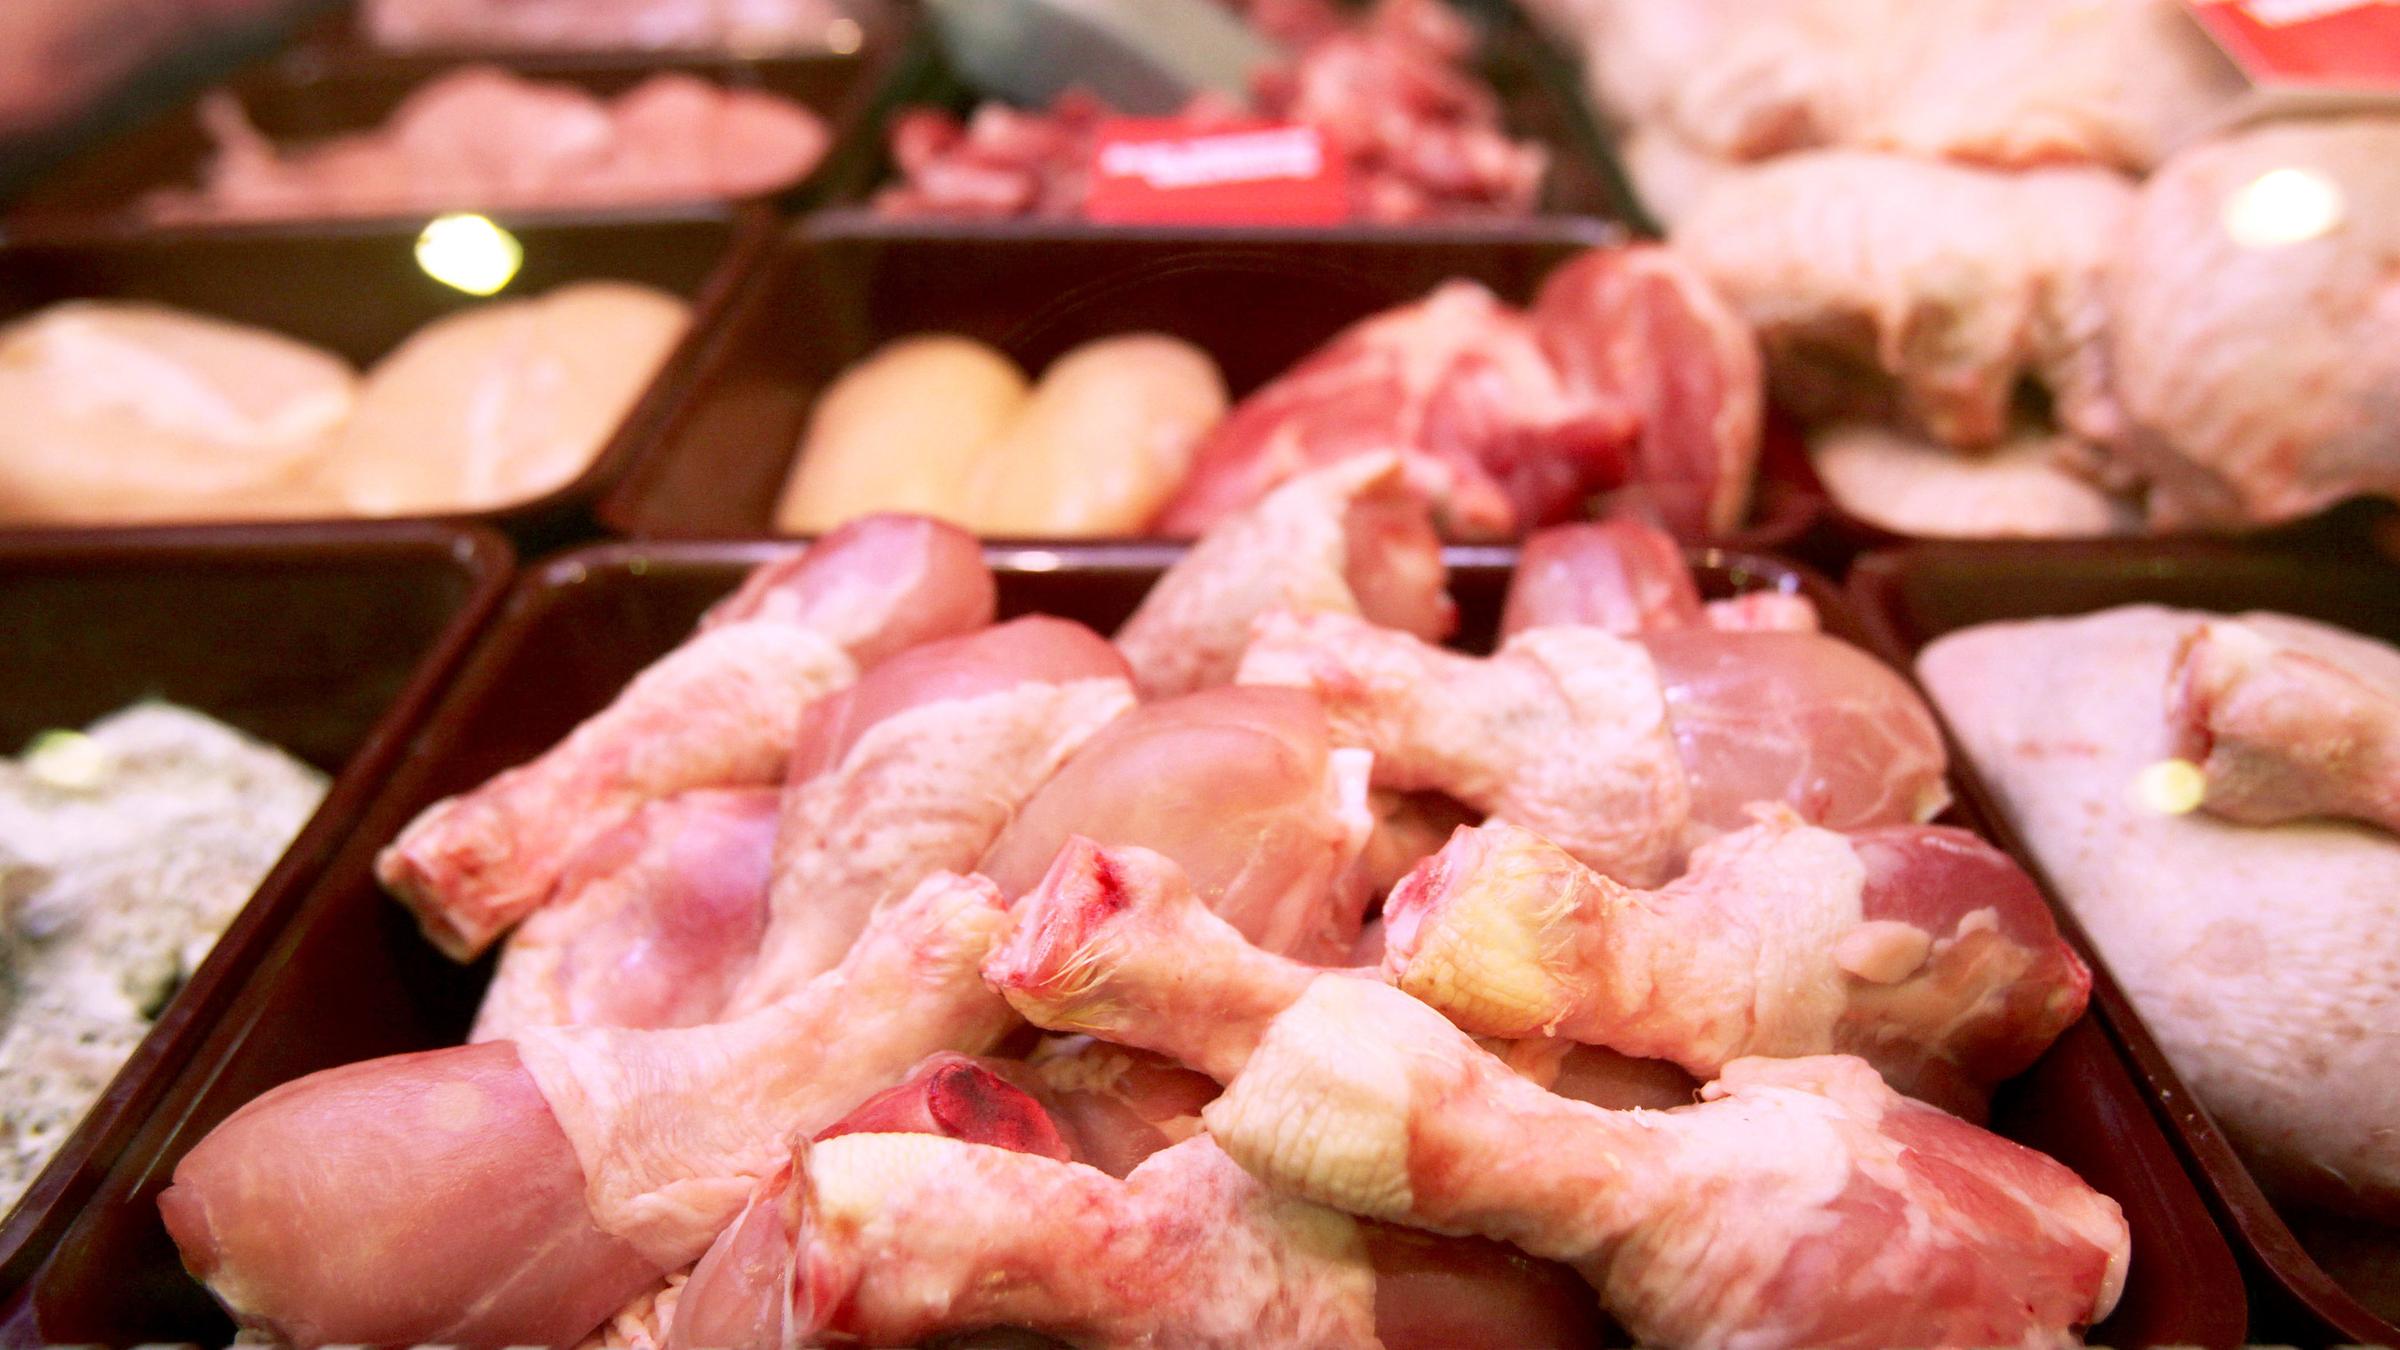 Geflügelfleisch im Supermarkt, aufgenommen am 04.01.2011